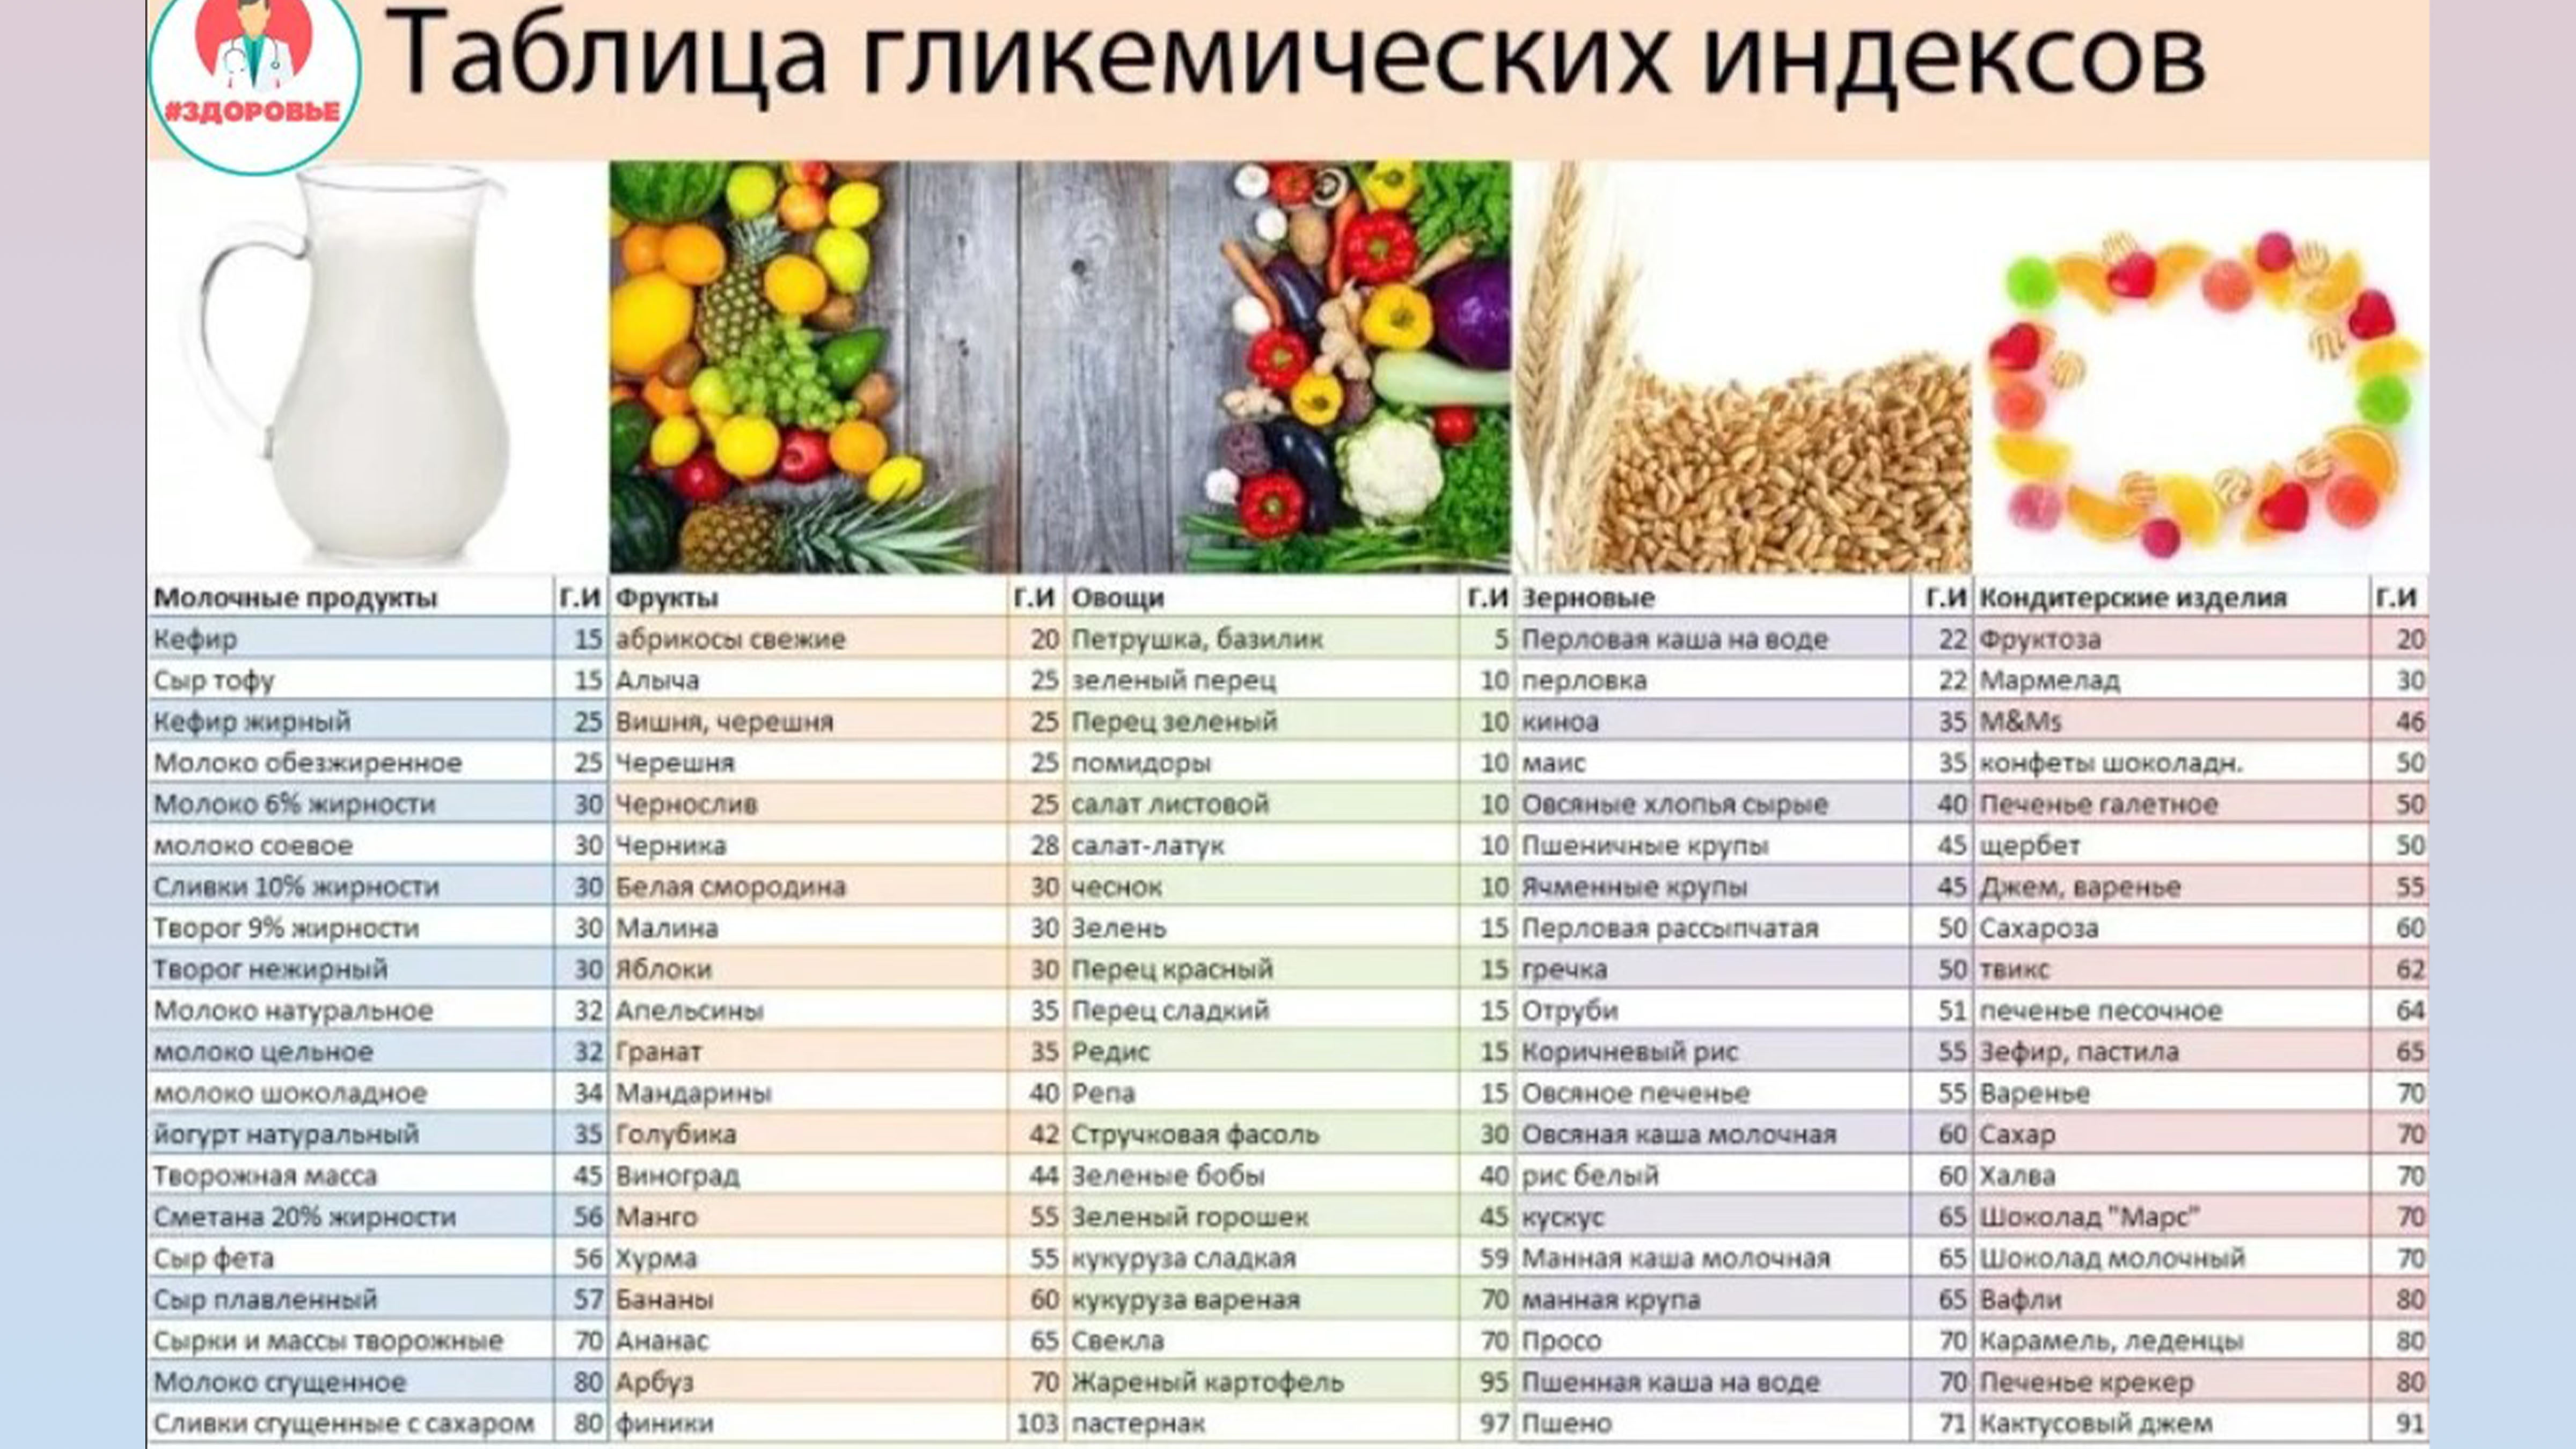 Таблица гликемических индексов продуктов питания.